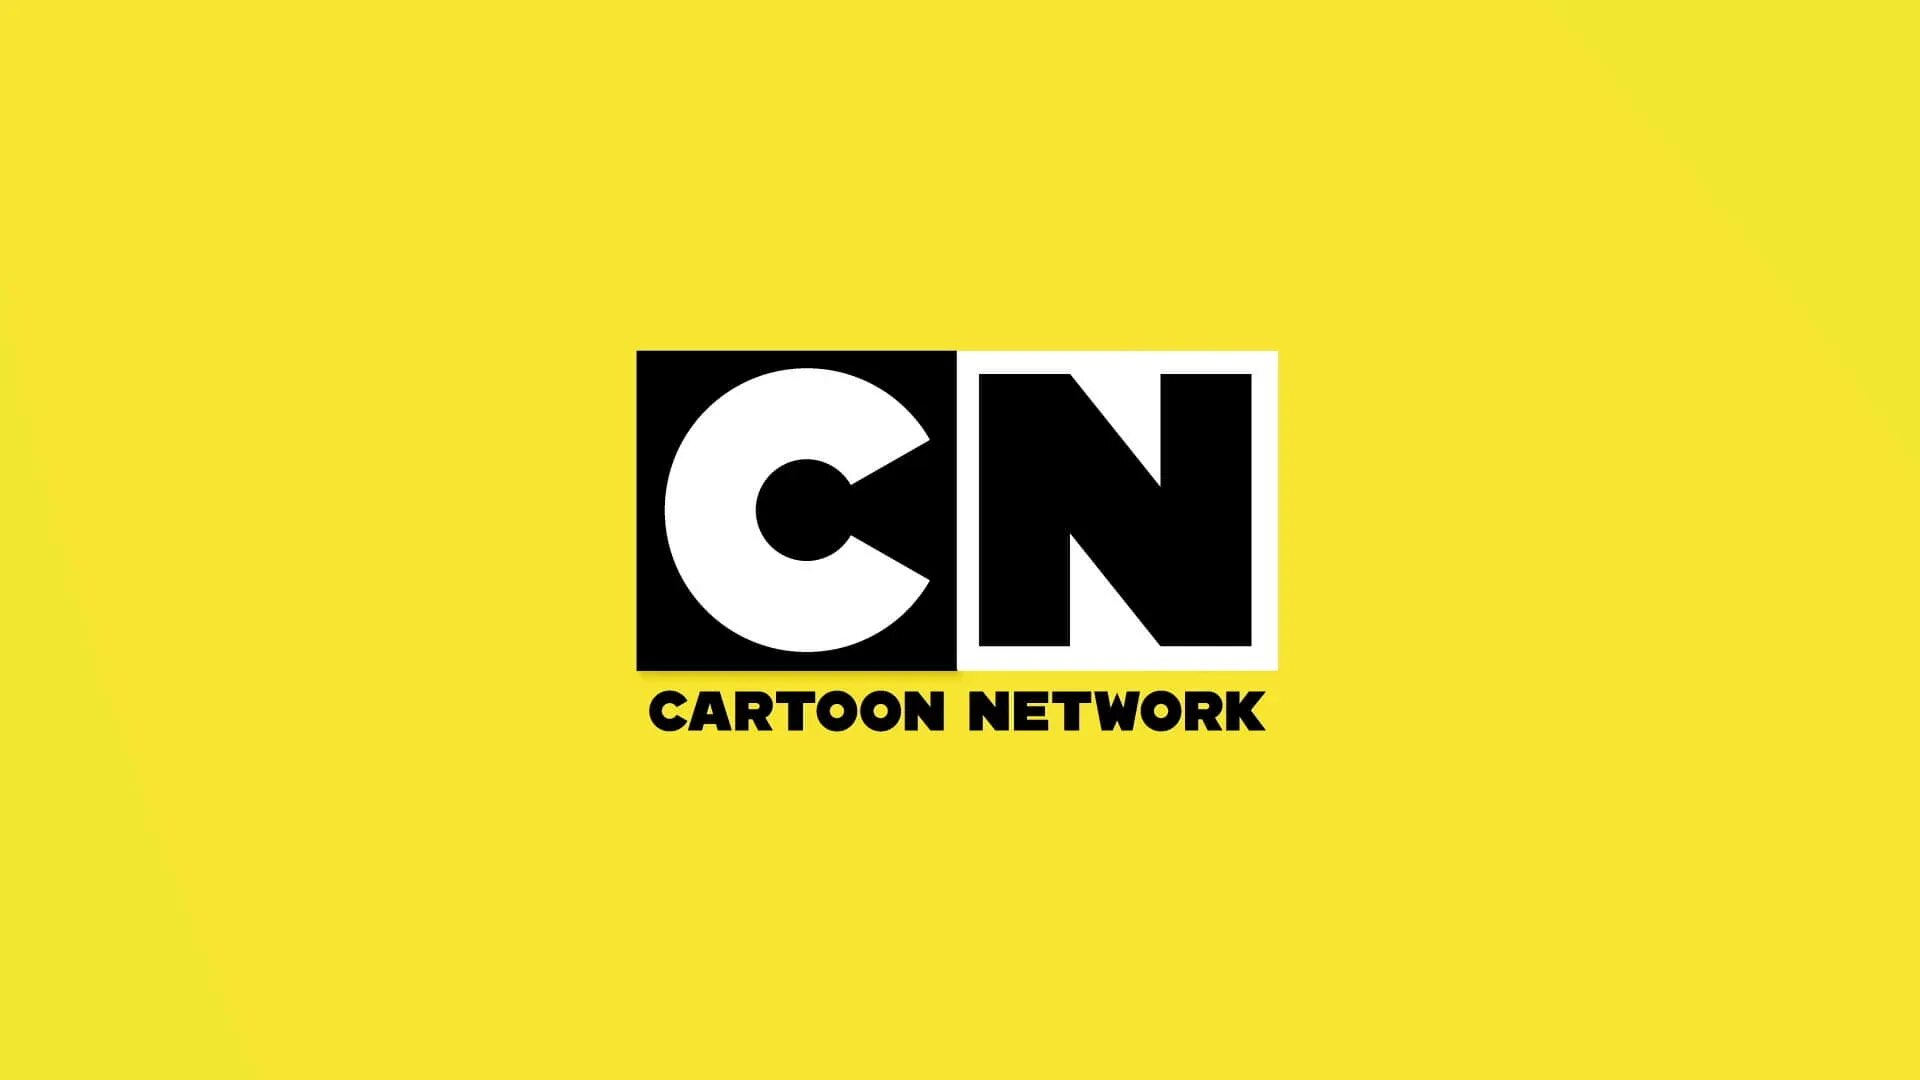 Картун нетворк. Картун нетворк лого. Телеканал cartoon Network. CN cartoon Network logo.